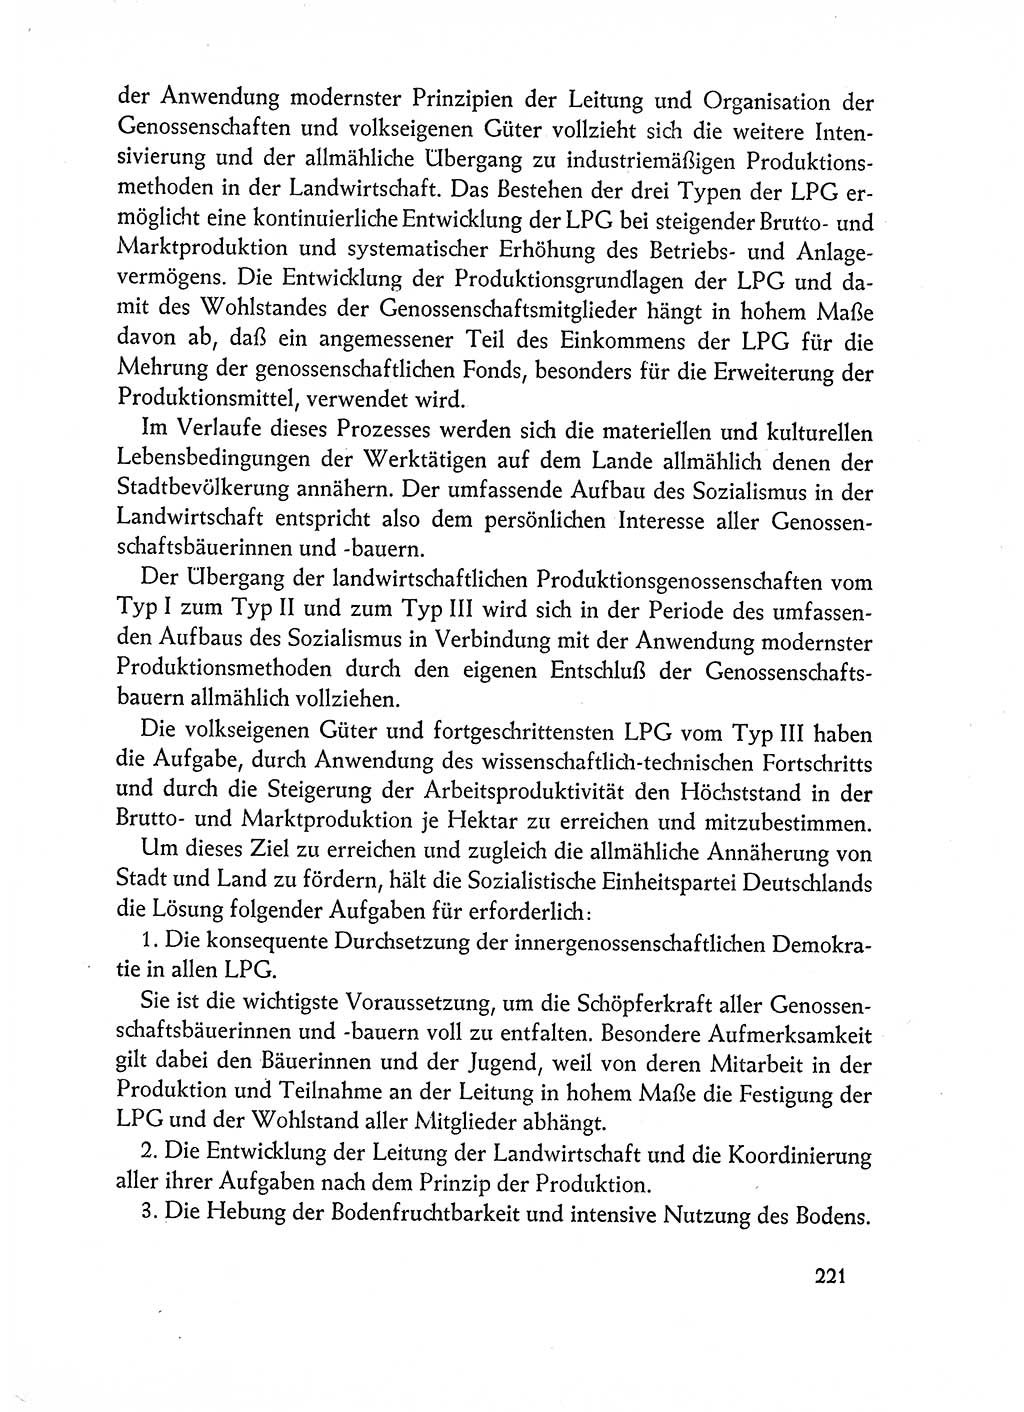 Dokumente der Sozialistischen Einheitspartei Deutschlands (SED) [Deutsche Demokratische Republik (DDR)] 1962-1963, Seite 221 (Dok. SED DDR 1962-1963, S. 221)